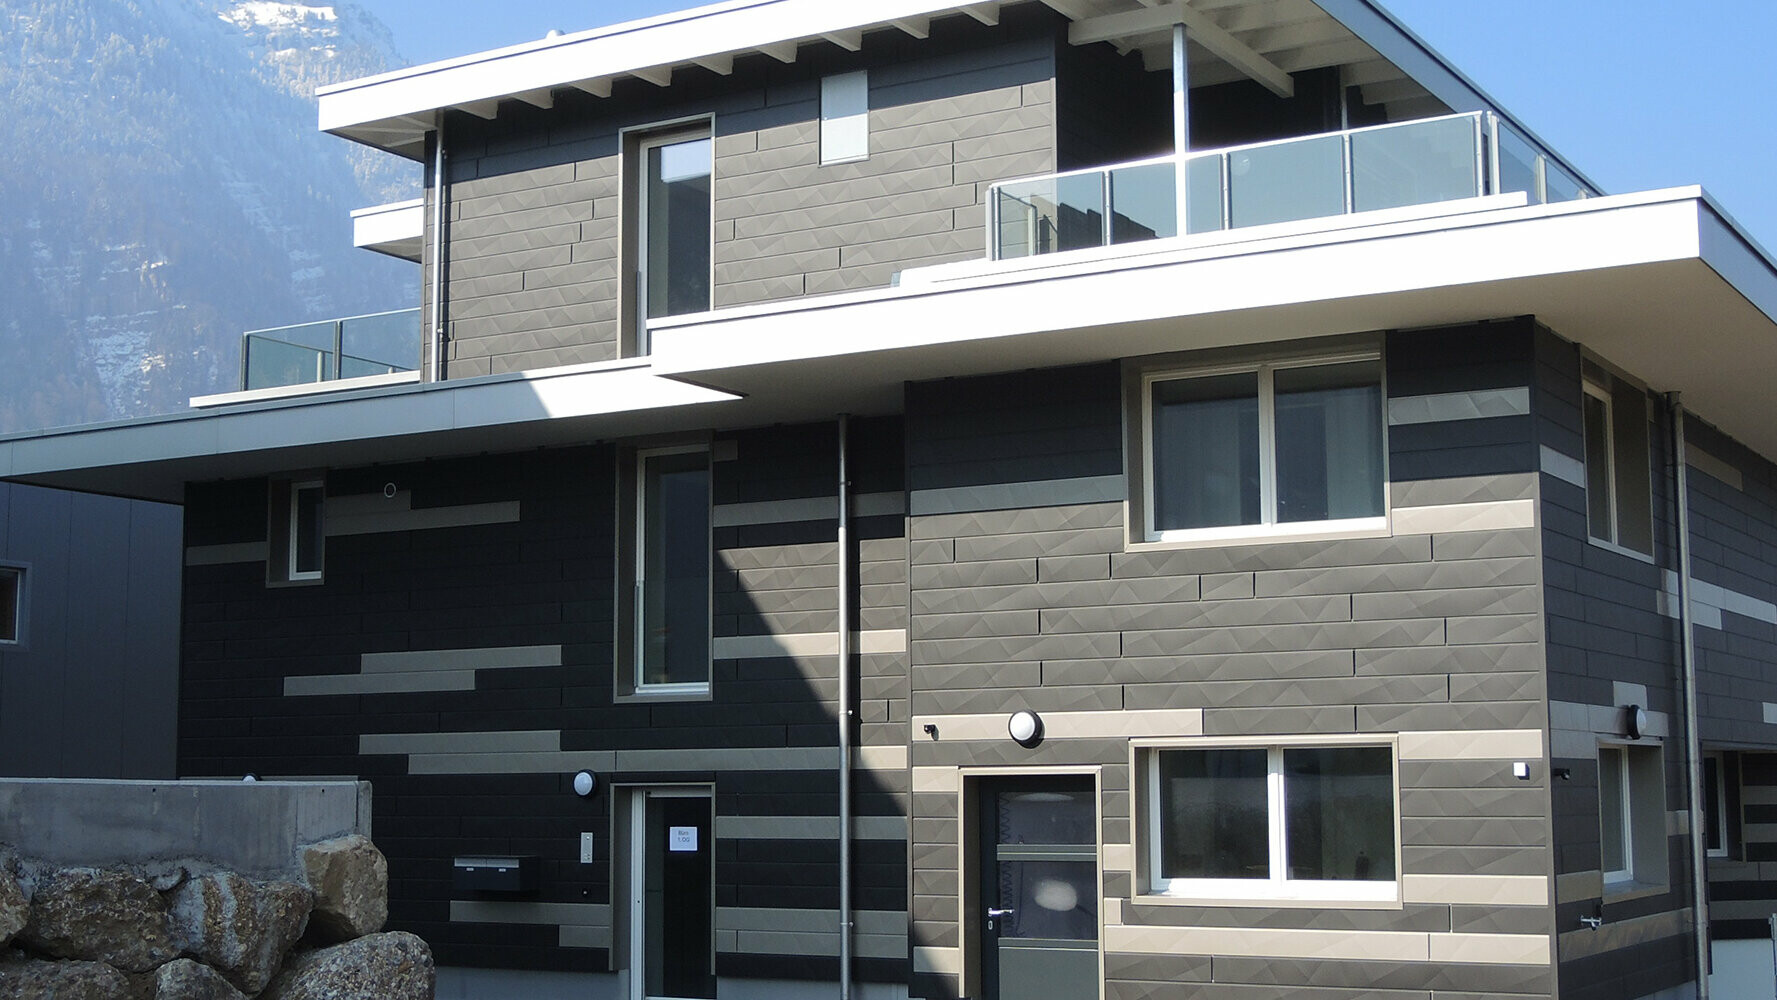 Kreative Fassadengestaltung mit den neuen PREFA Fassadenpaneelen Siding.X in zwei unterschiedlichen Farben;